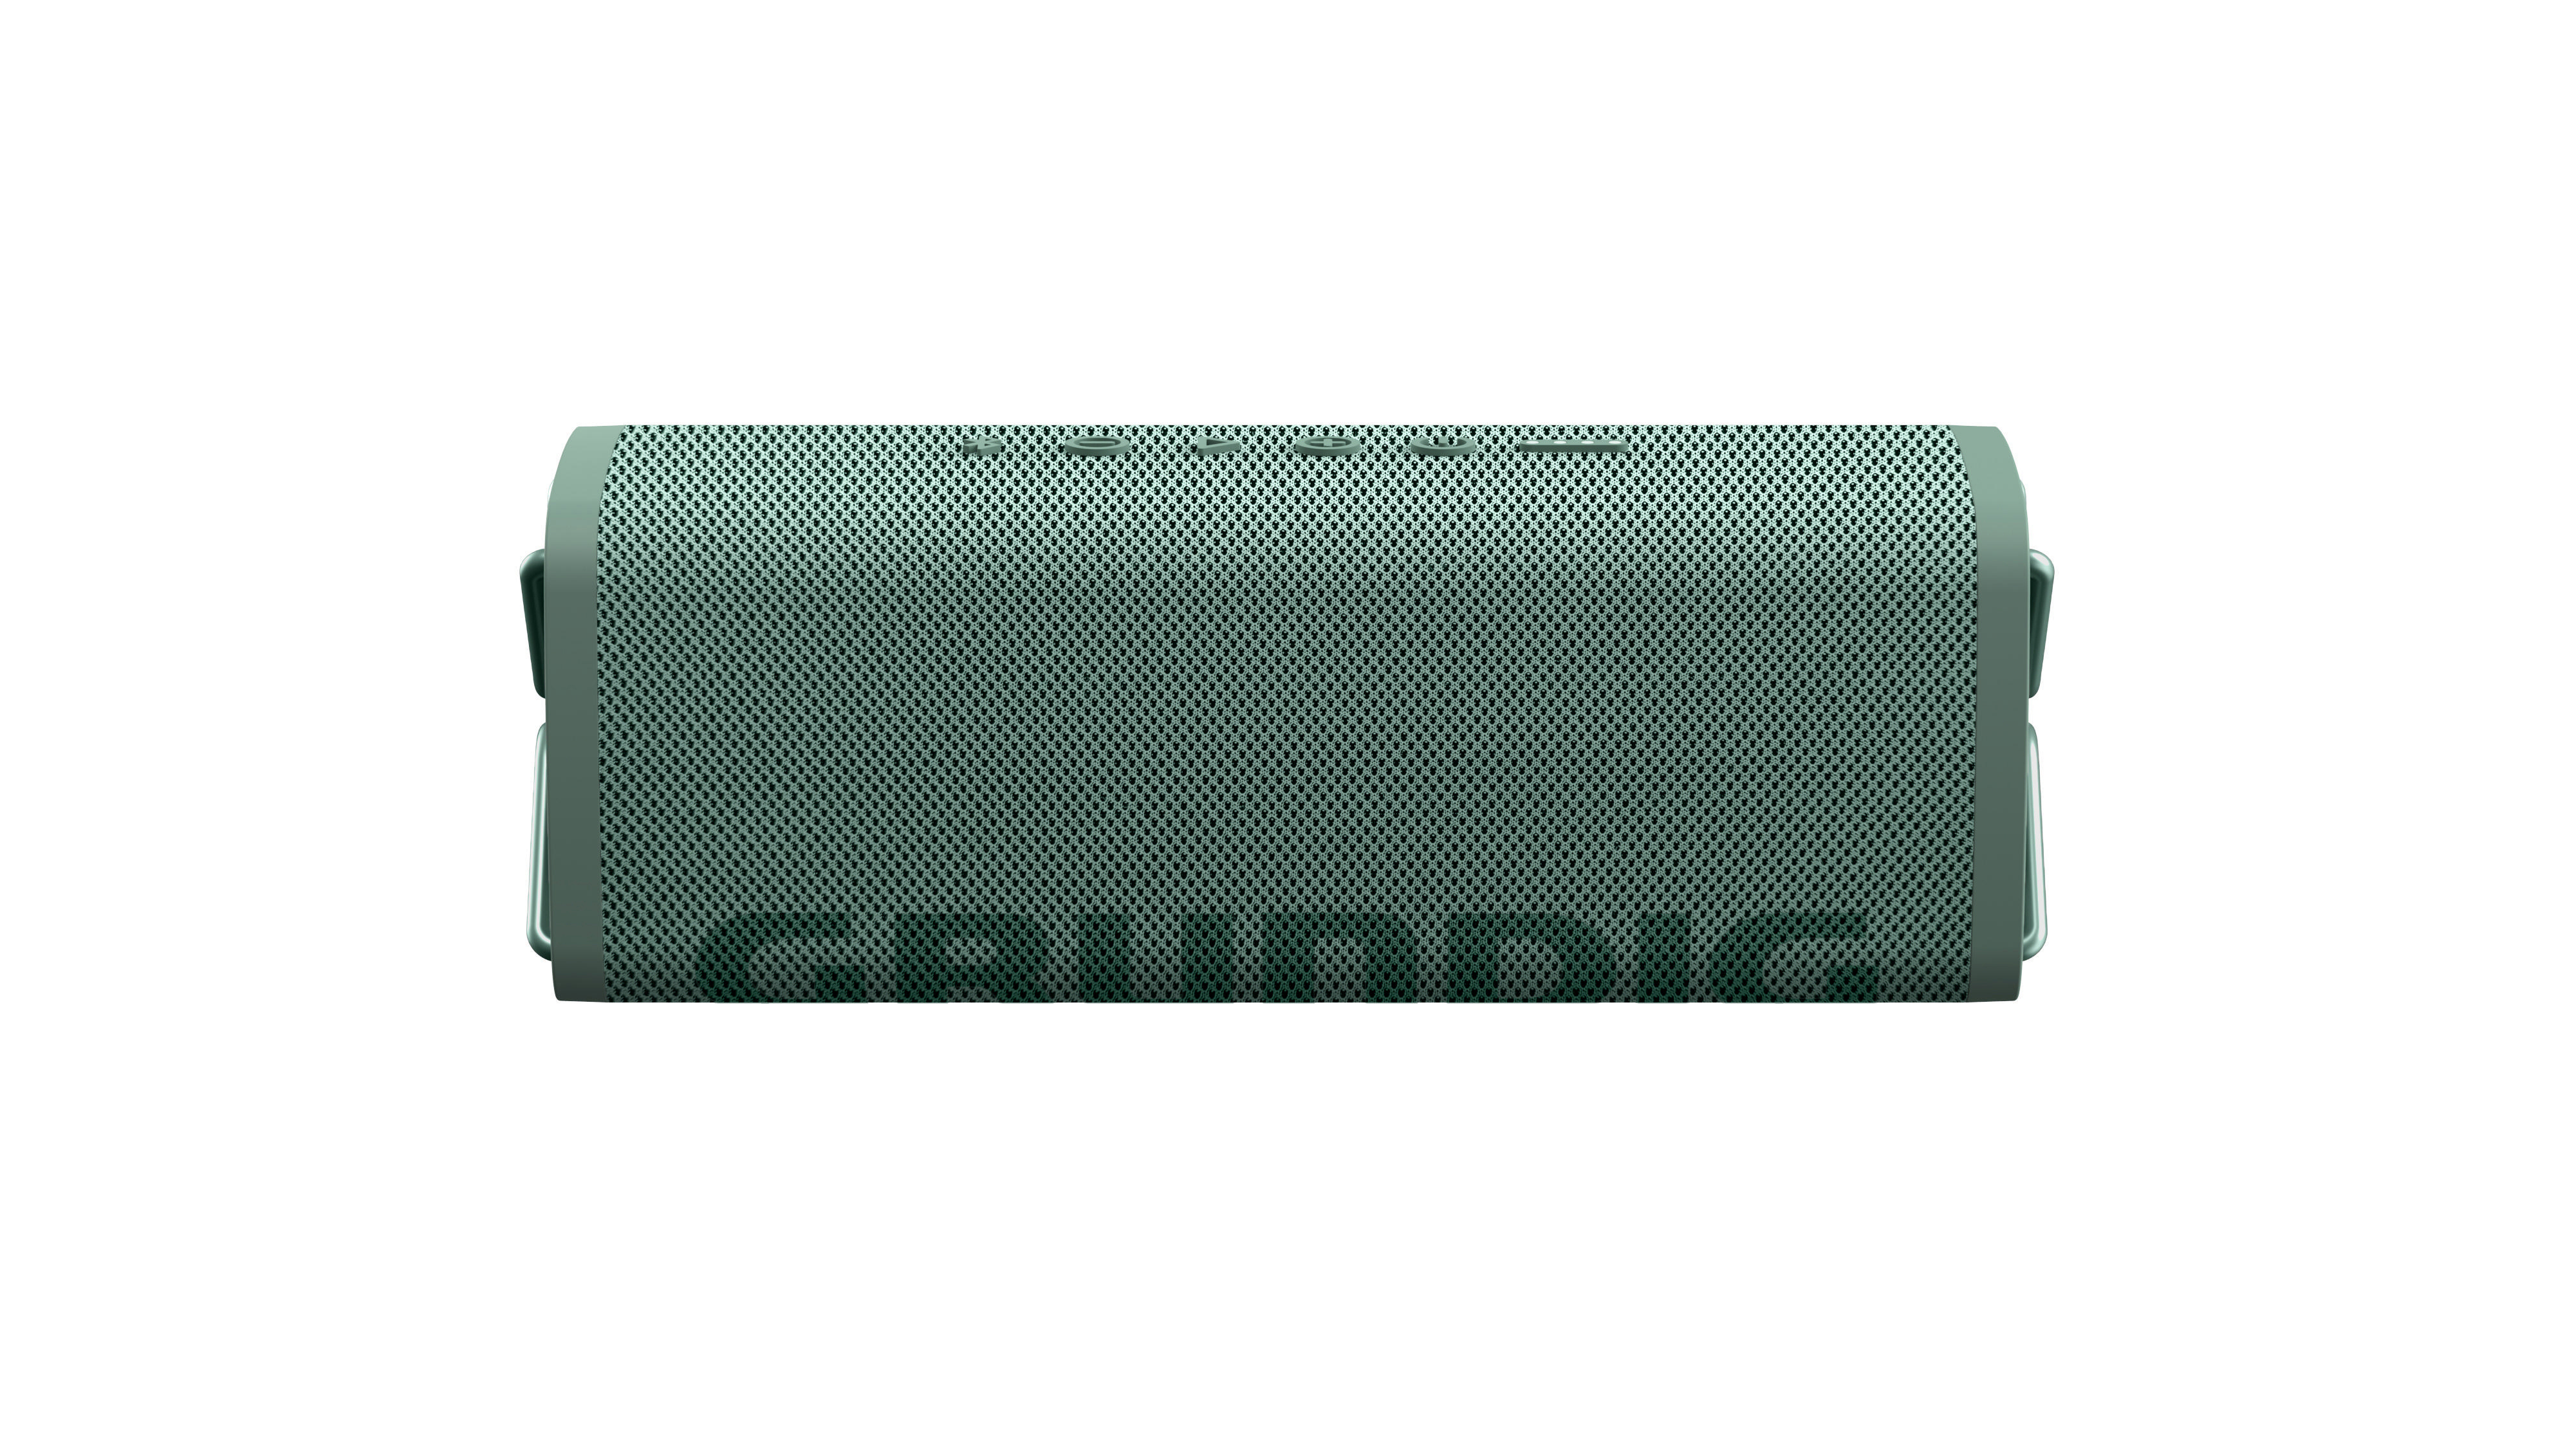 GRUNDIG GBT CLUB Wasserfest Grün, Bluetooth Lautsprecher